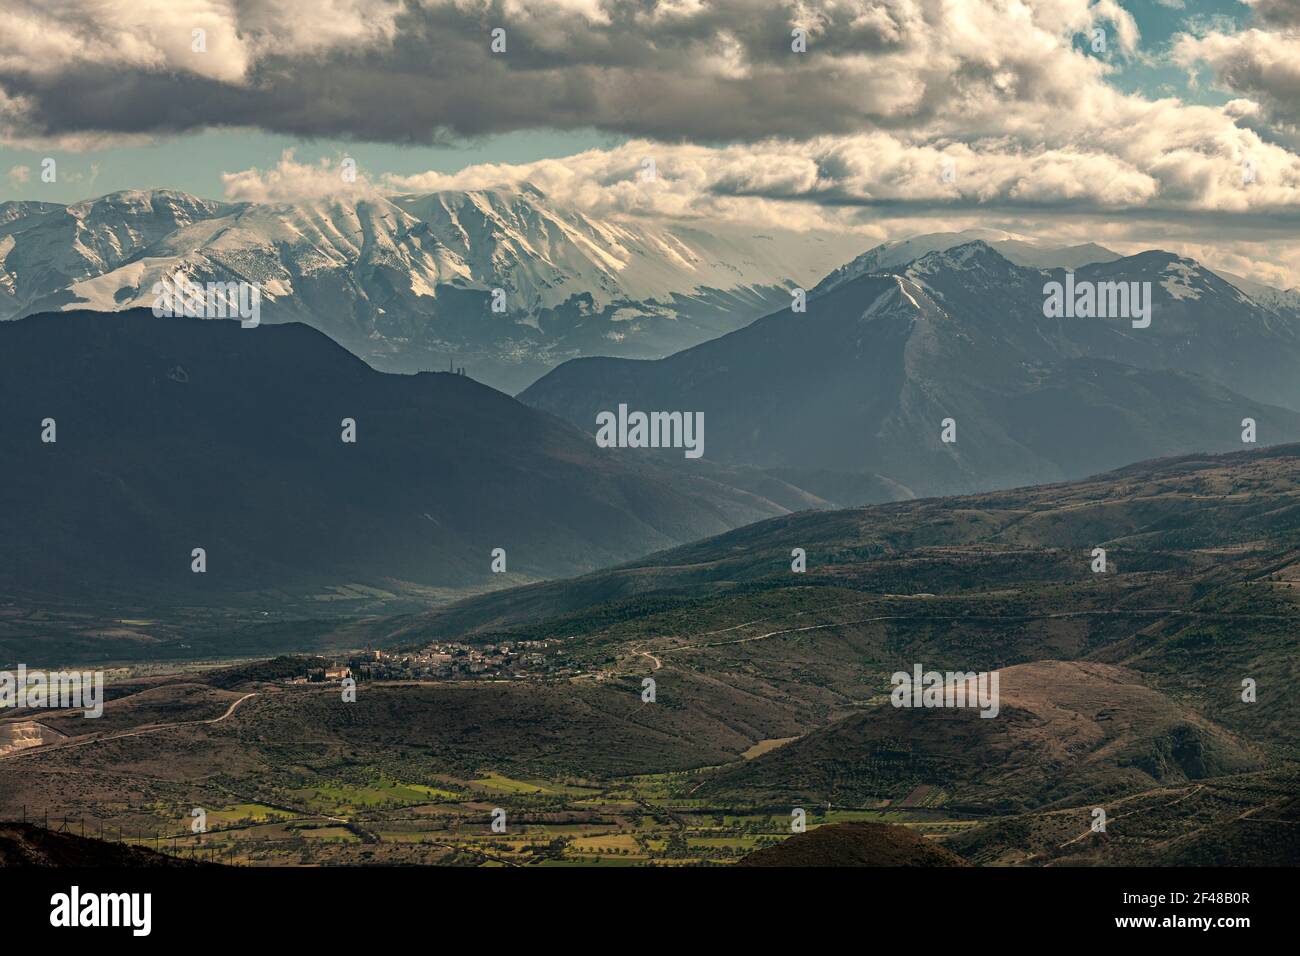 Vue de dessus de la vallée de Tirino dans les Abruzzes. En arrière-plan, les montagnes enneigées de la Morrone et de la Maiella. Abruzzes, Italie, Europe Banque D'Images